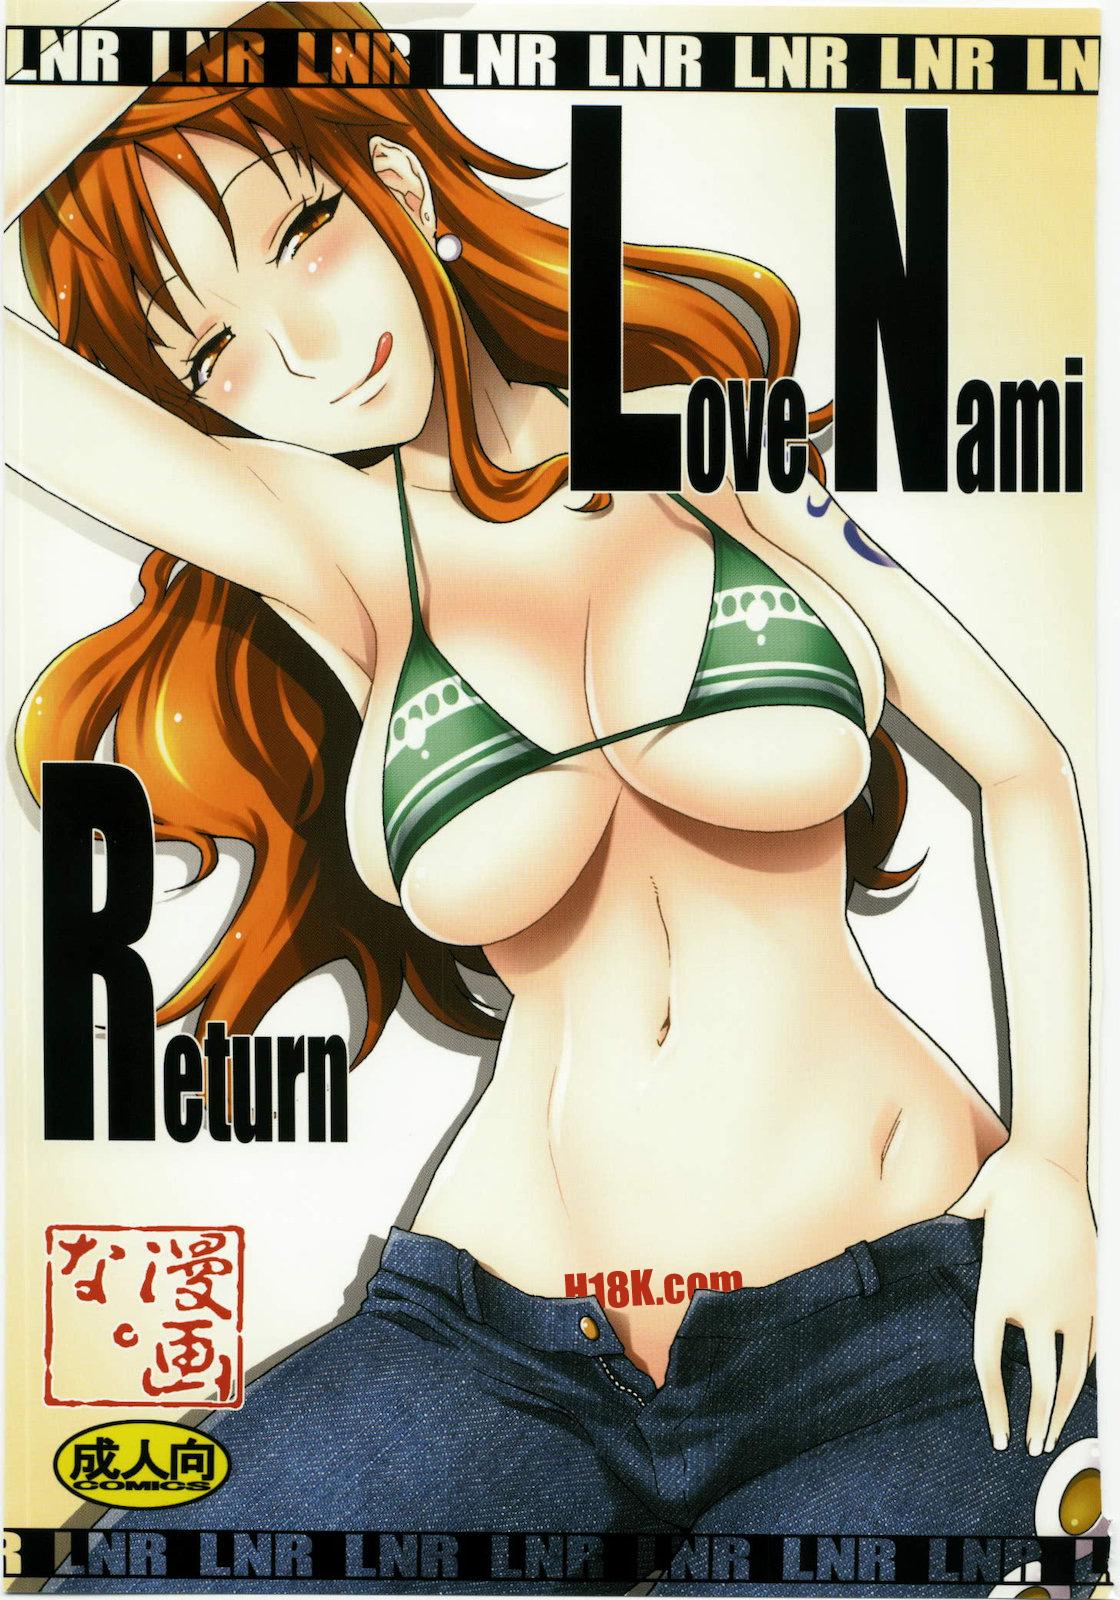 LNR - Love Nami Return 0